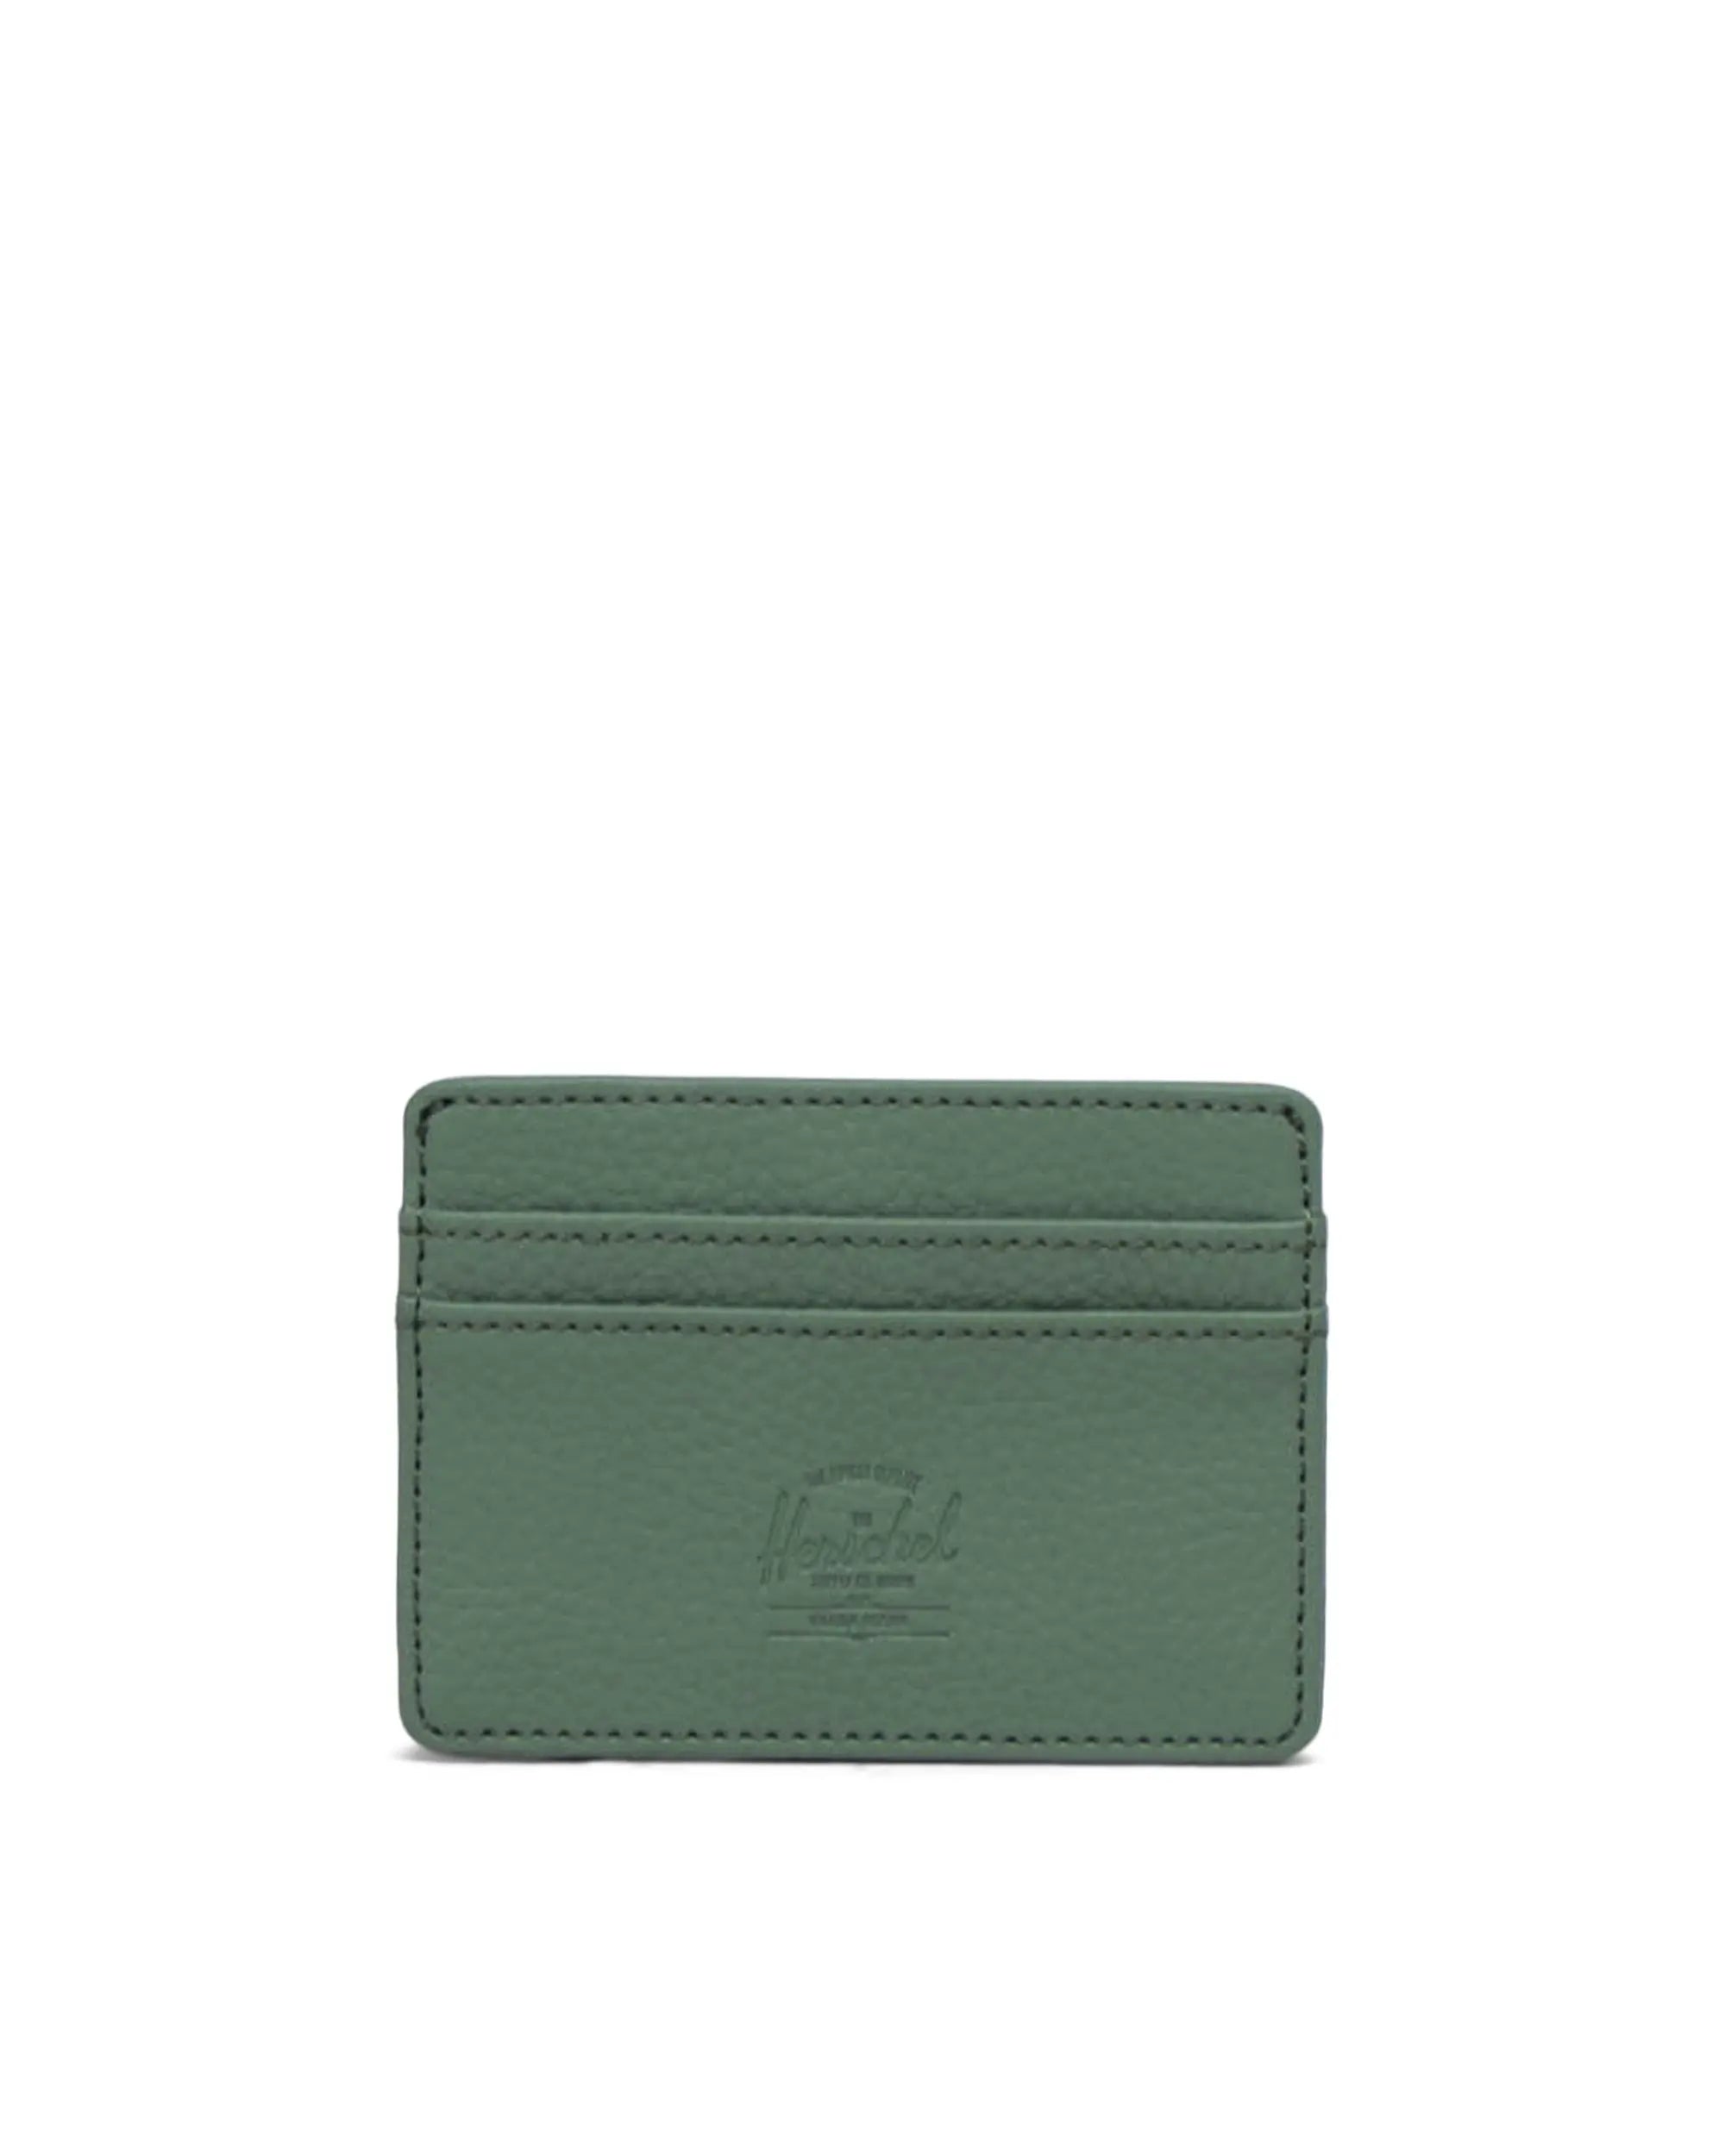 Charlie Vegan Leather Cardholder Wallet